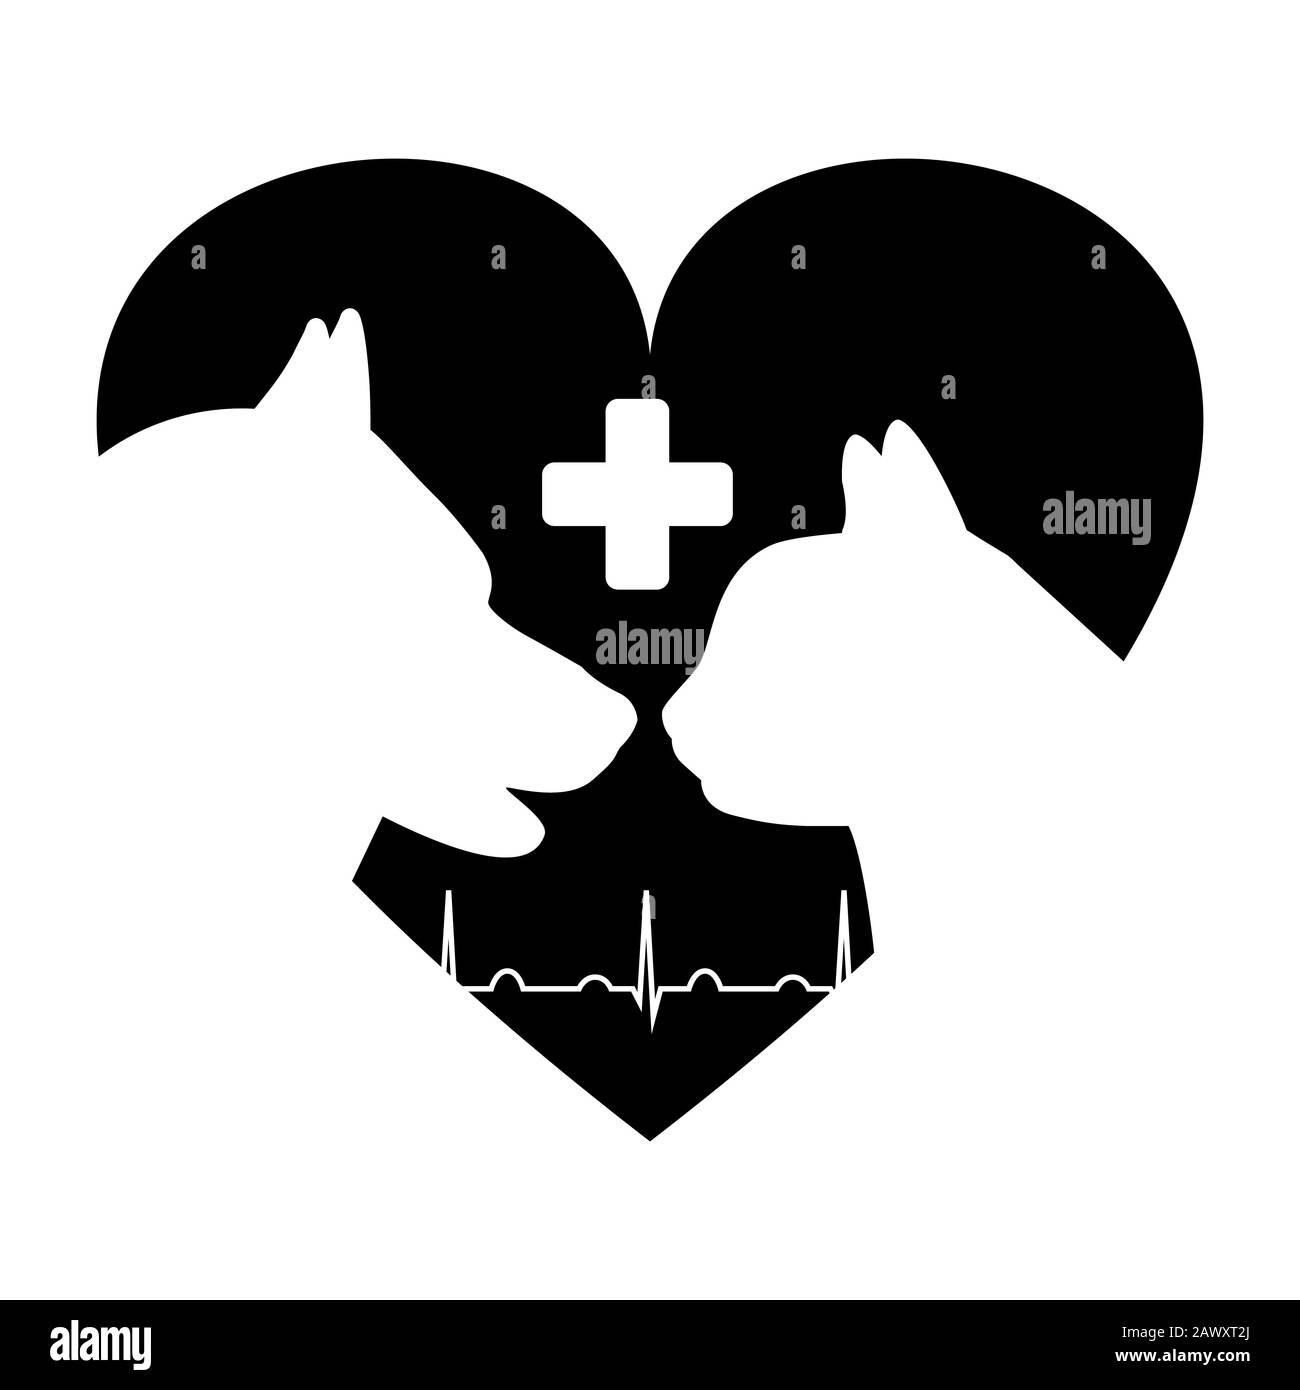 Veterinary clinic logo. Heart shape cat and dog Stock Vector